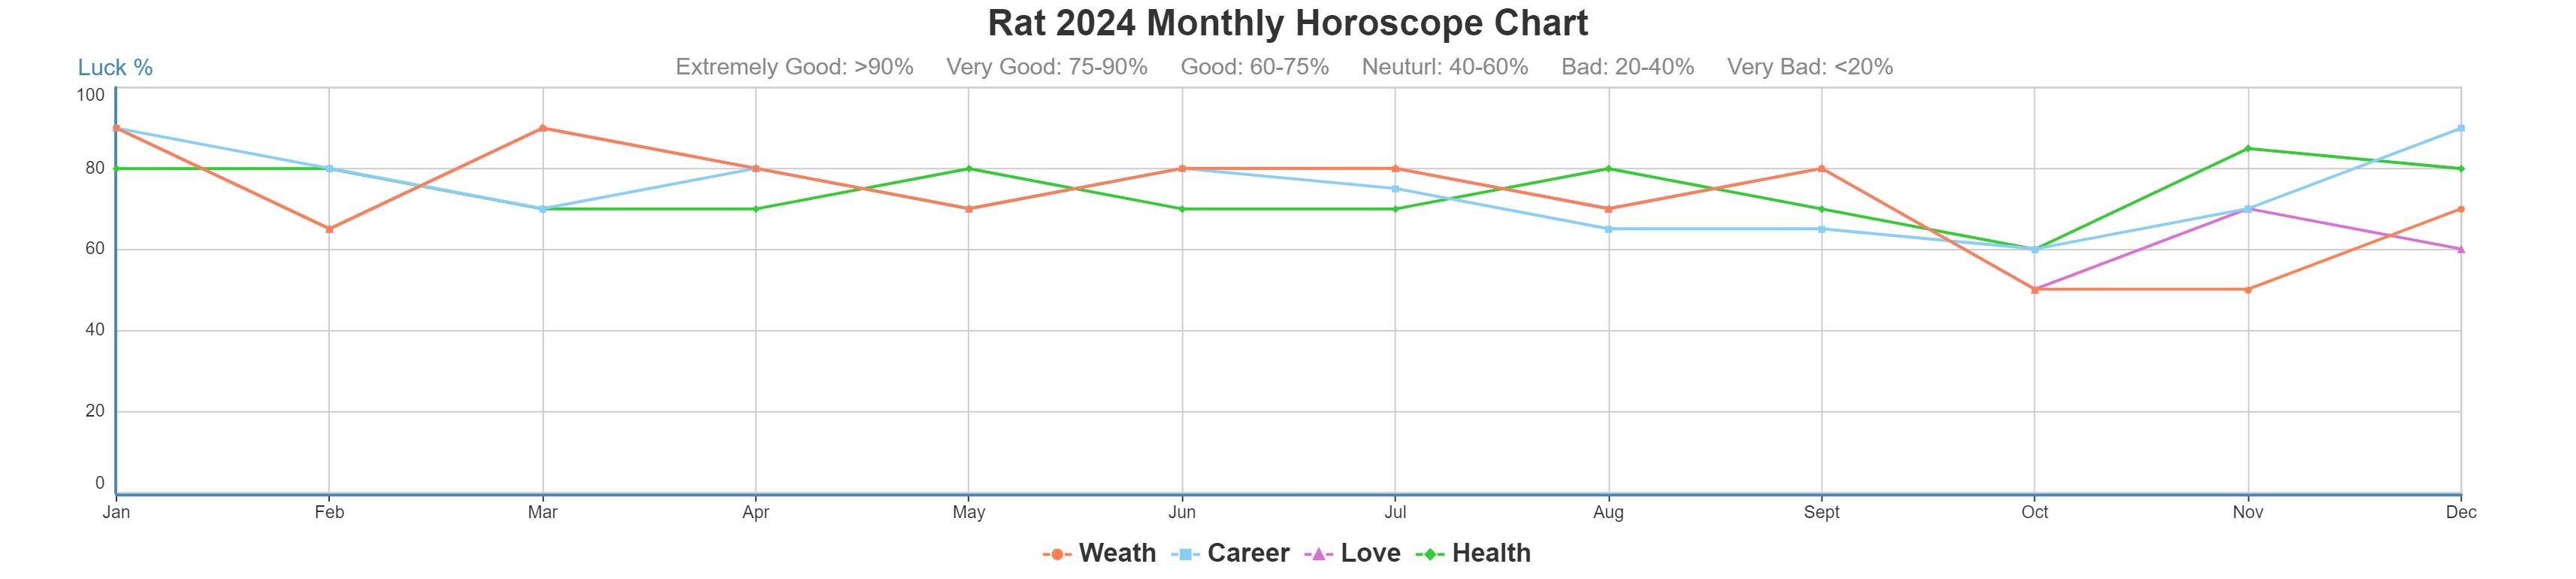 Rat 2024 monthly horoscope